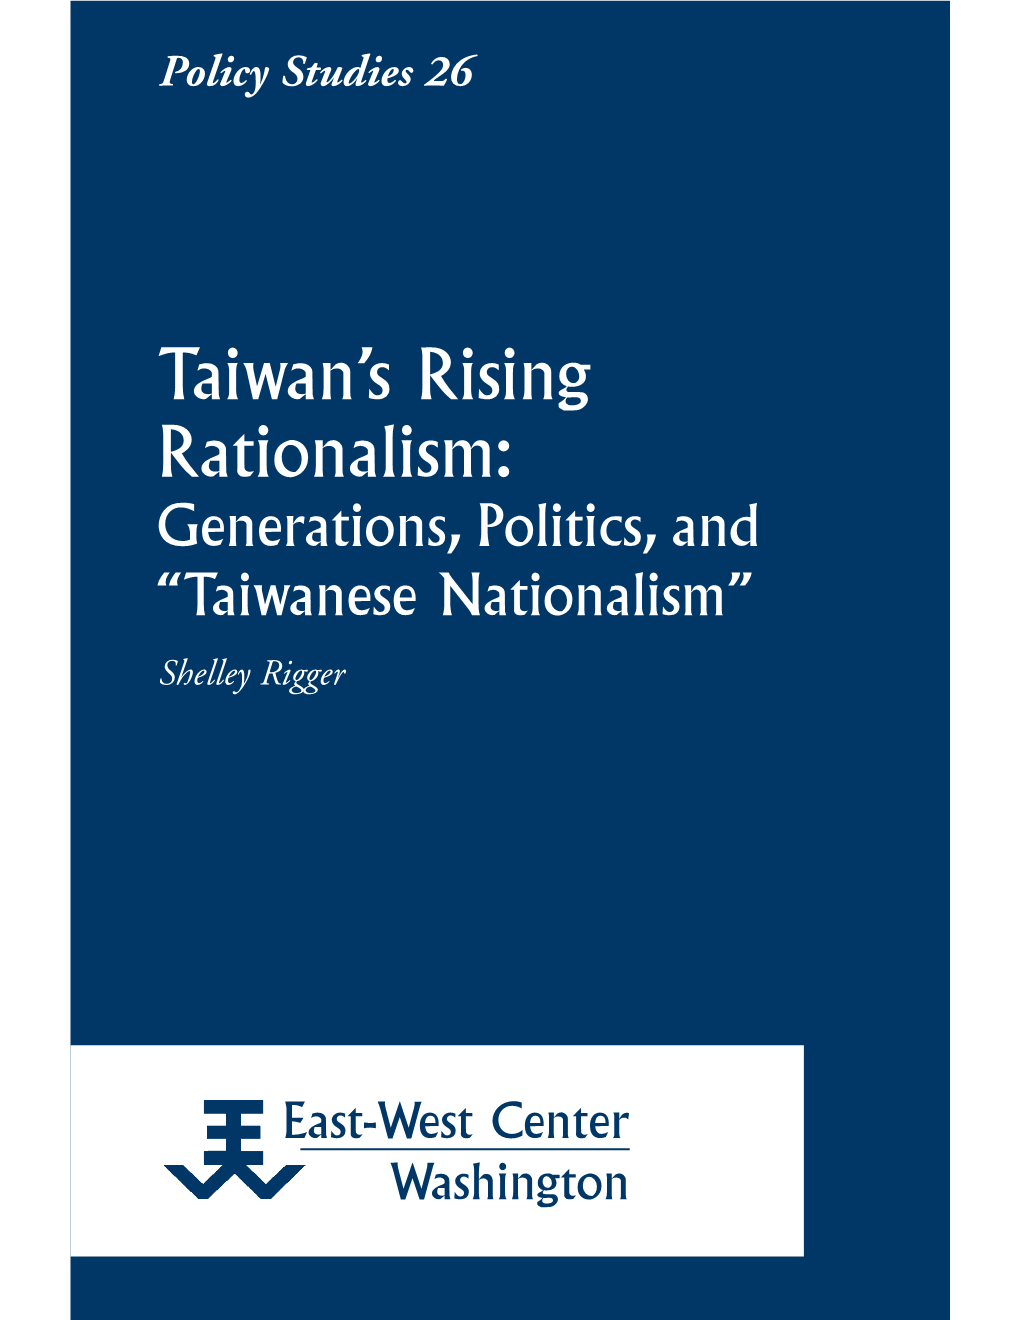 Taiwanese Nationalism” Shelley Rigger